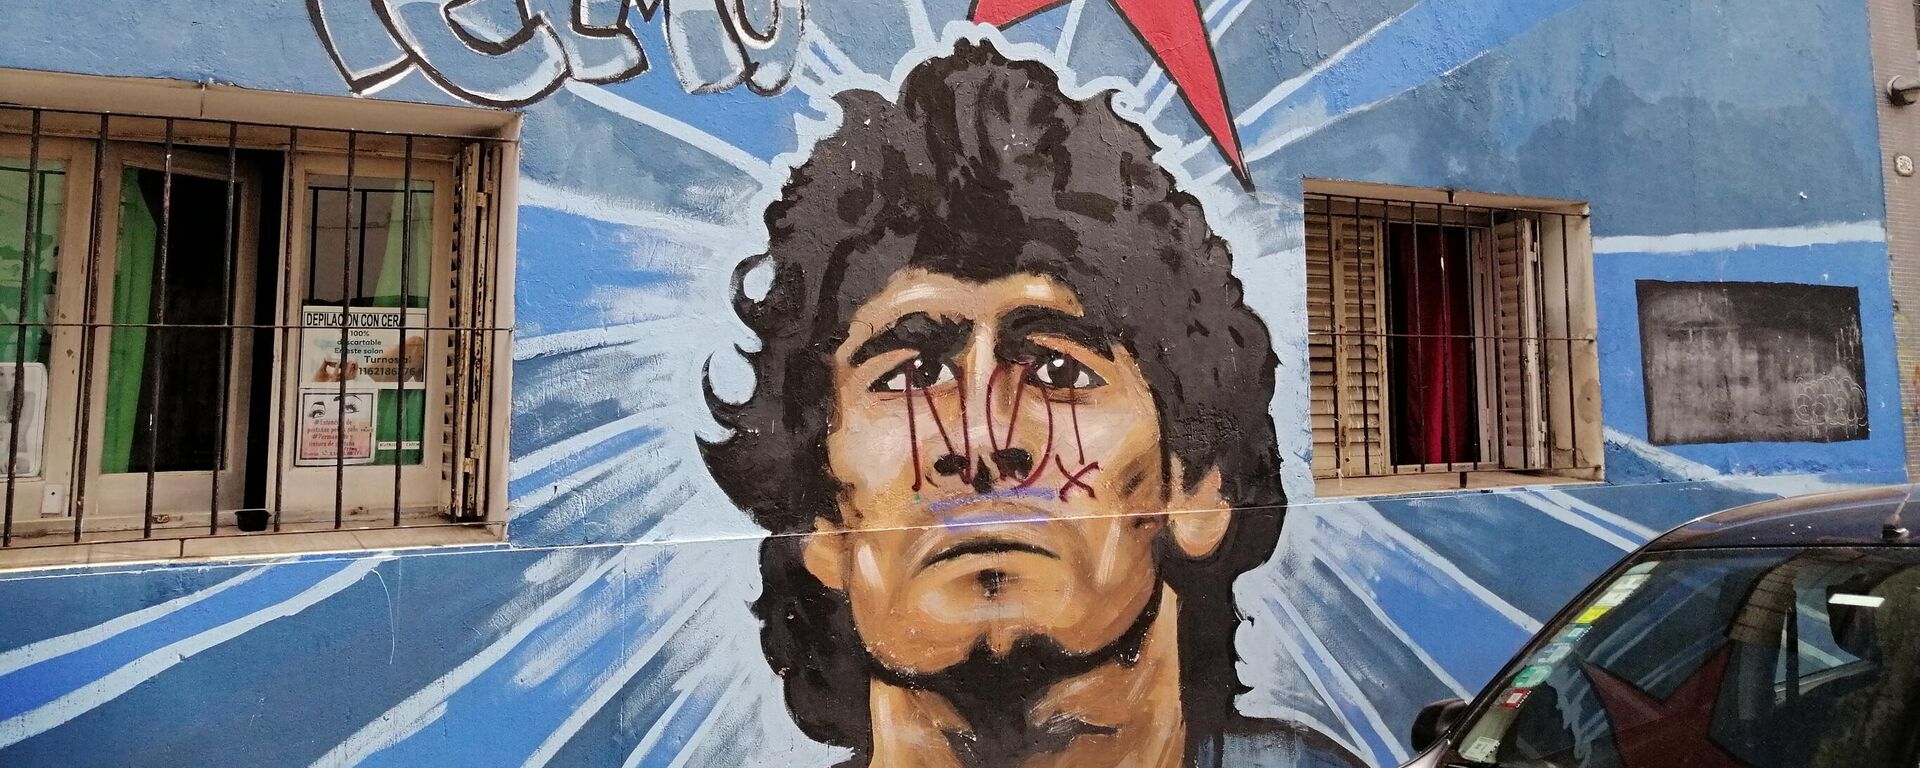 Un retrato de Maradona plasmado en el barrio de San Telmo, en Buenos Aires. - Sputnik Mundo, 1920, 17.12.2022